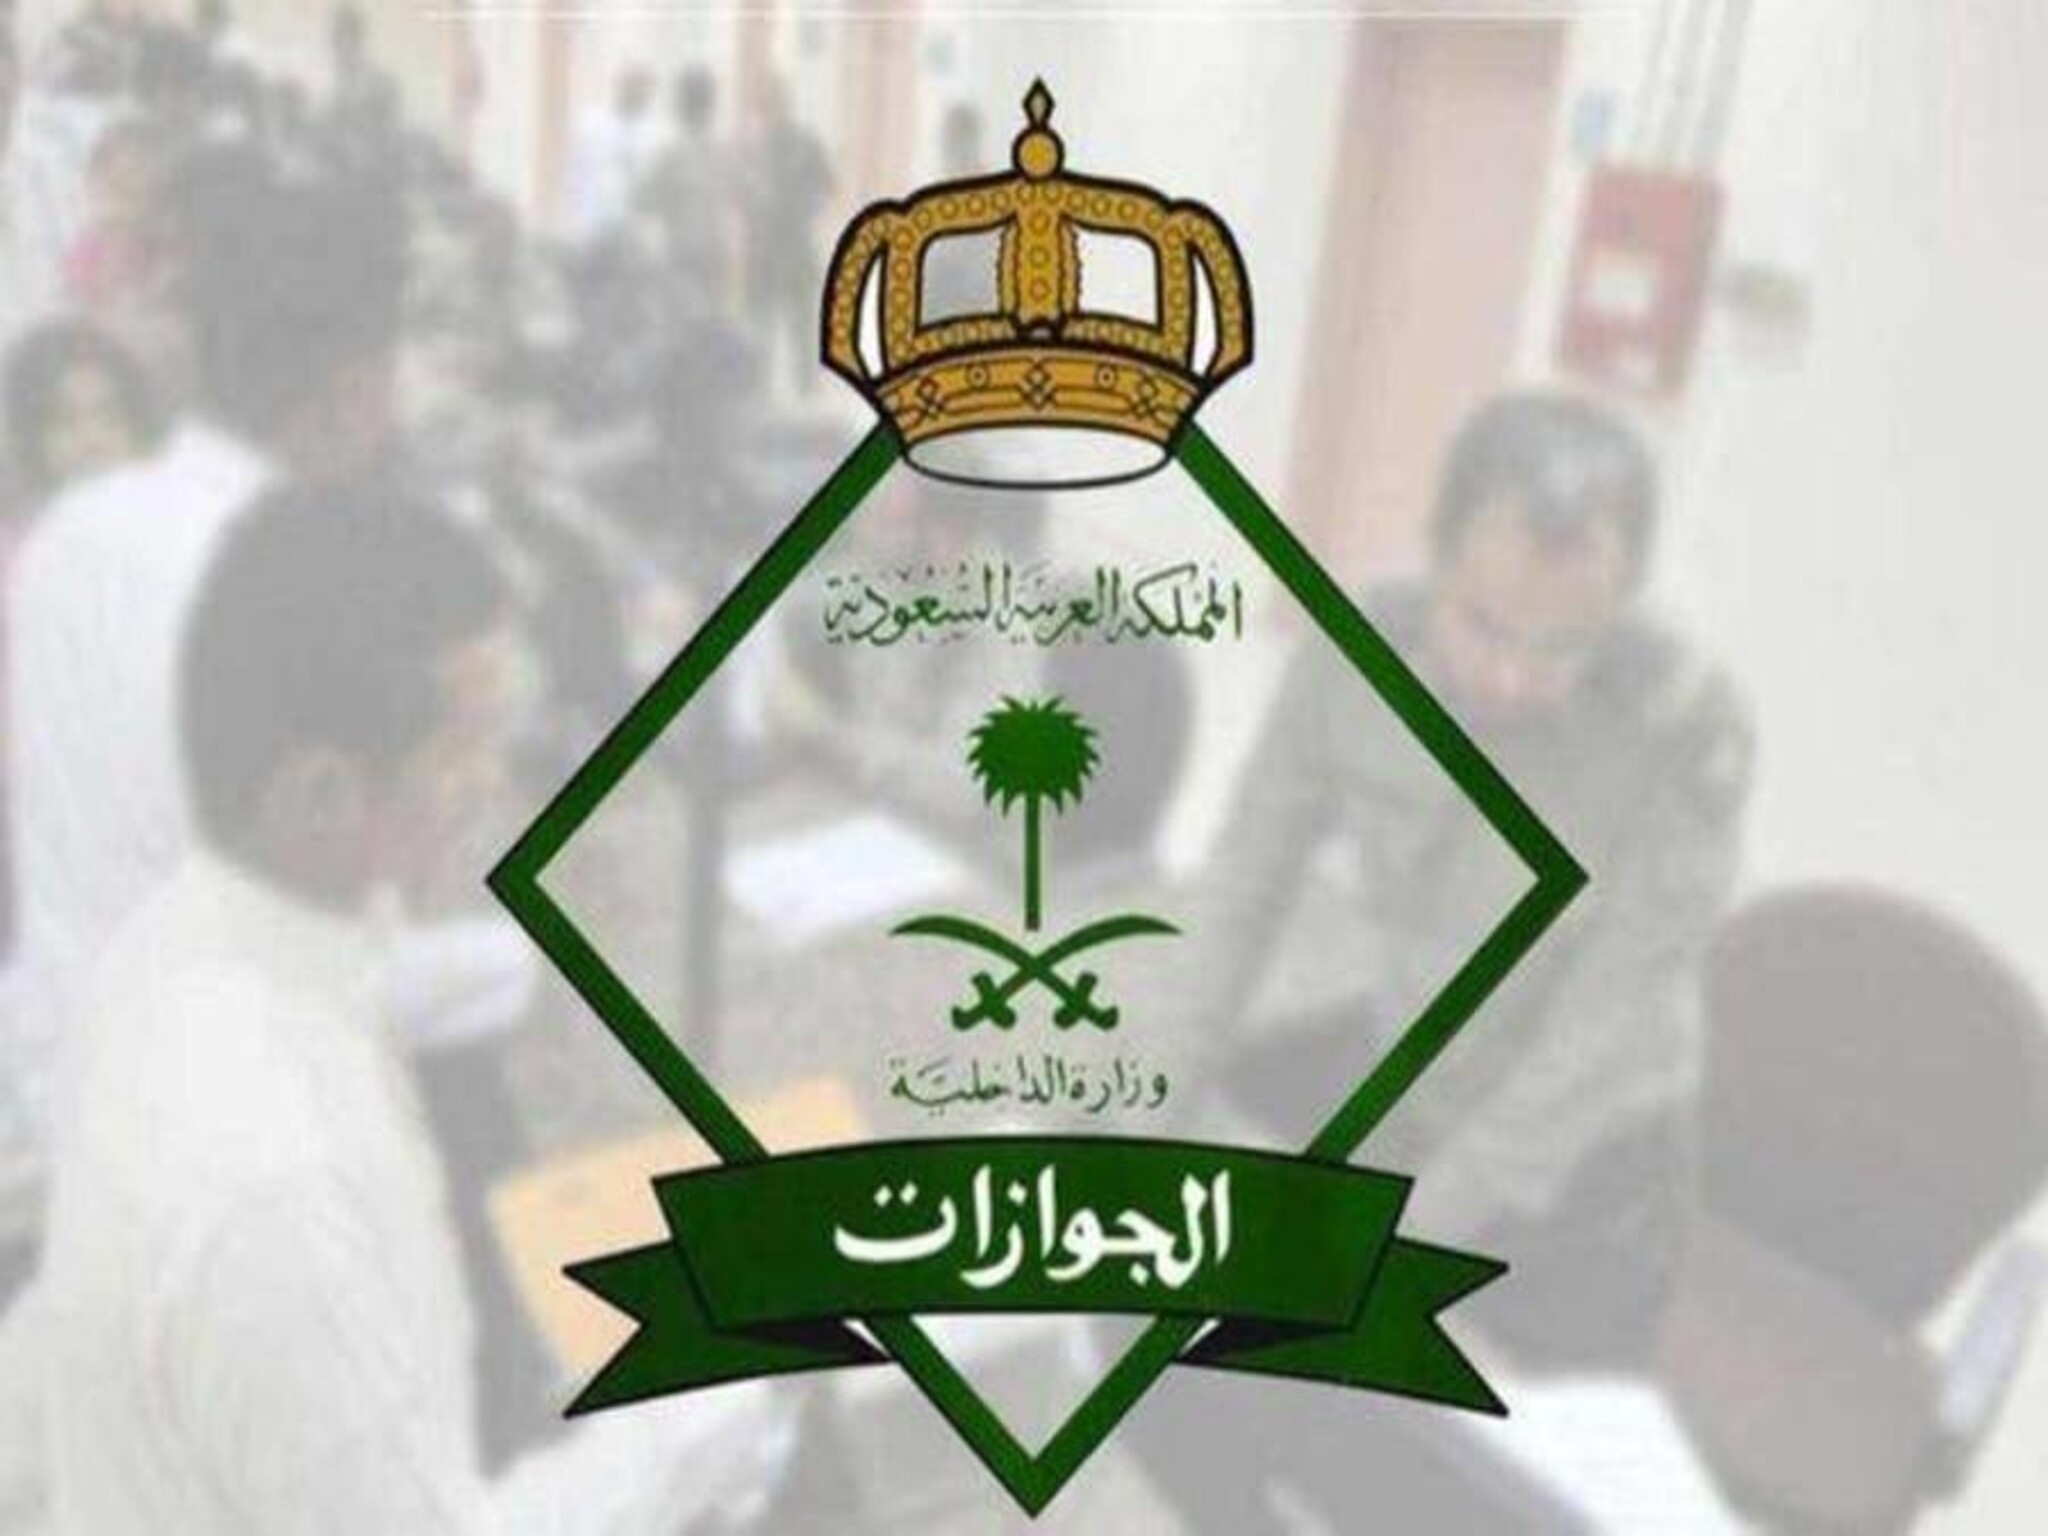 الجوازات السعودية تعلن تقديم خدماتها للمواطنين ورعايا الدول القادمين من السودان